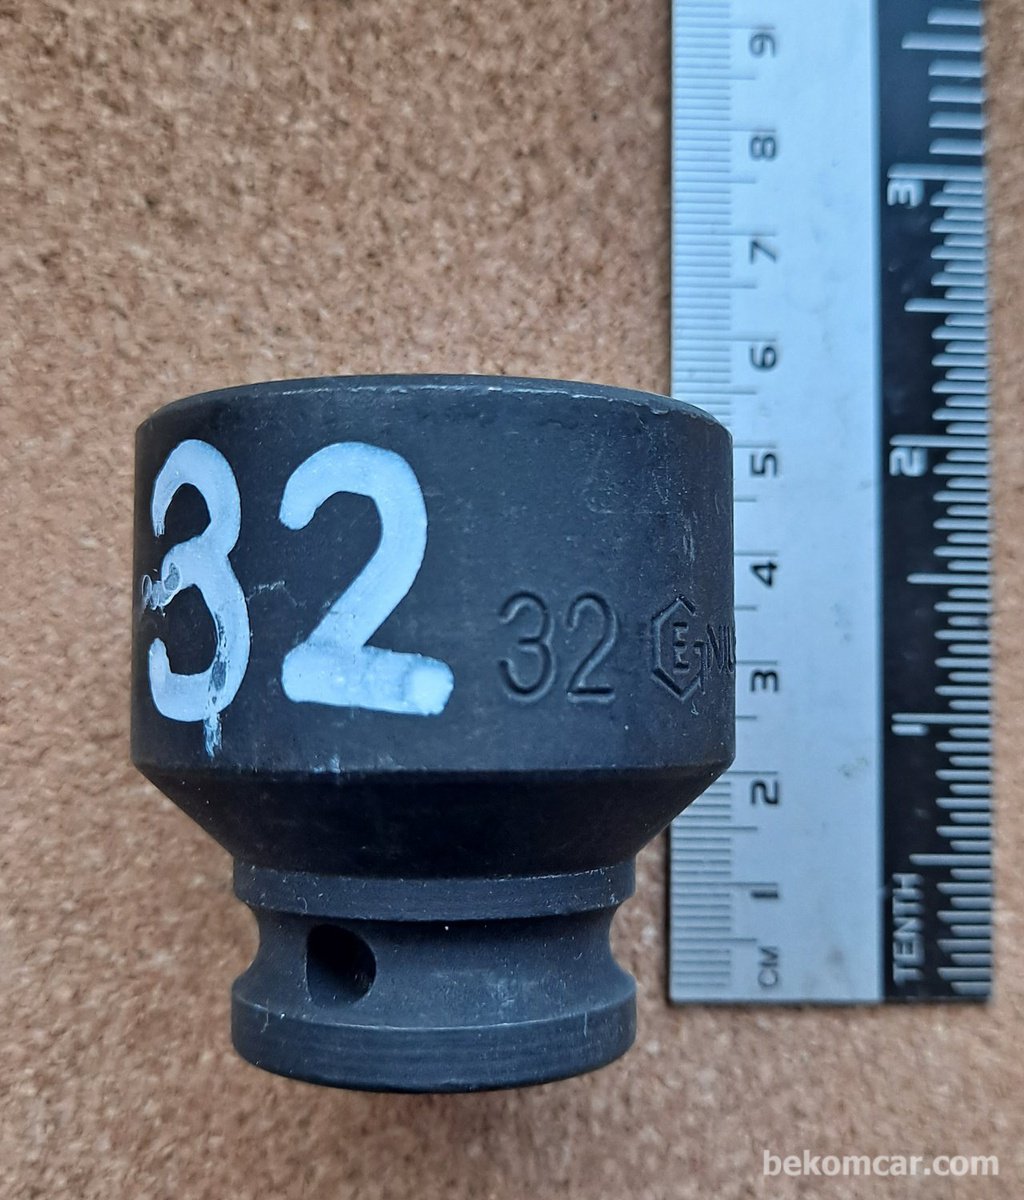 6각 32mm 임팩트용 1/2" 소켓|베콤카 (bekomcar.com)